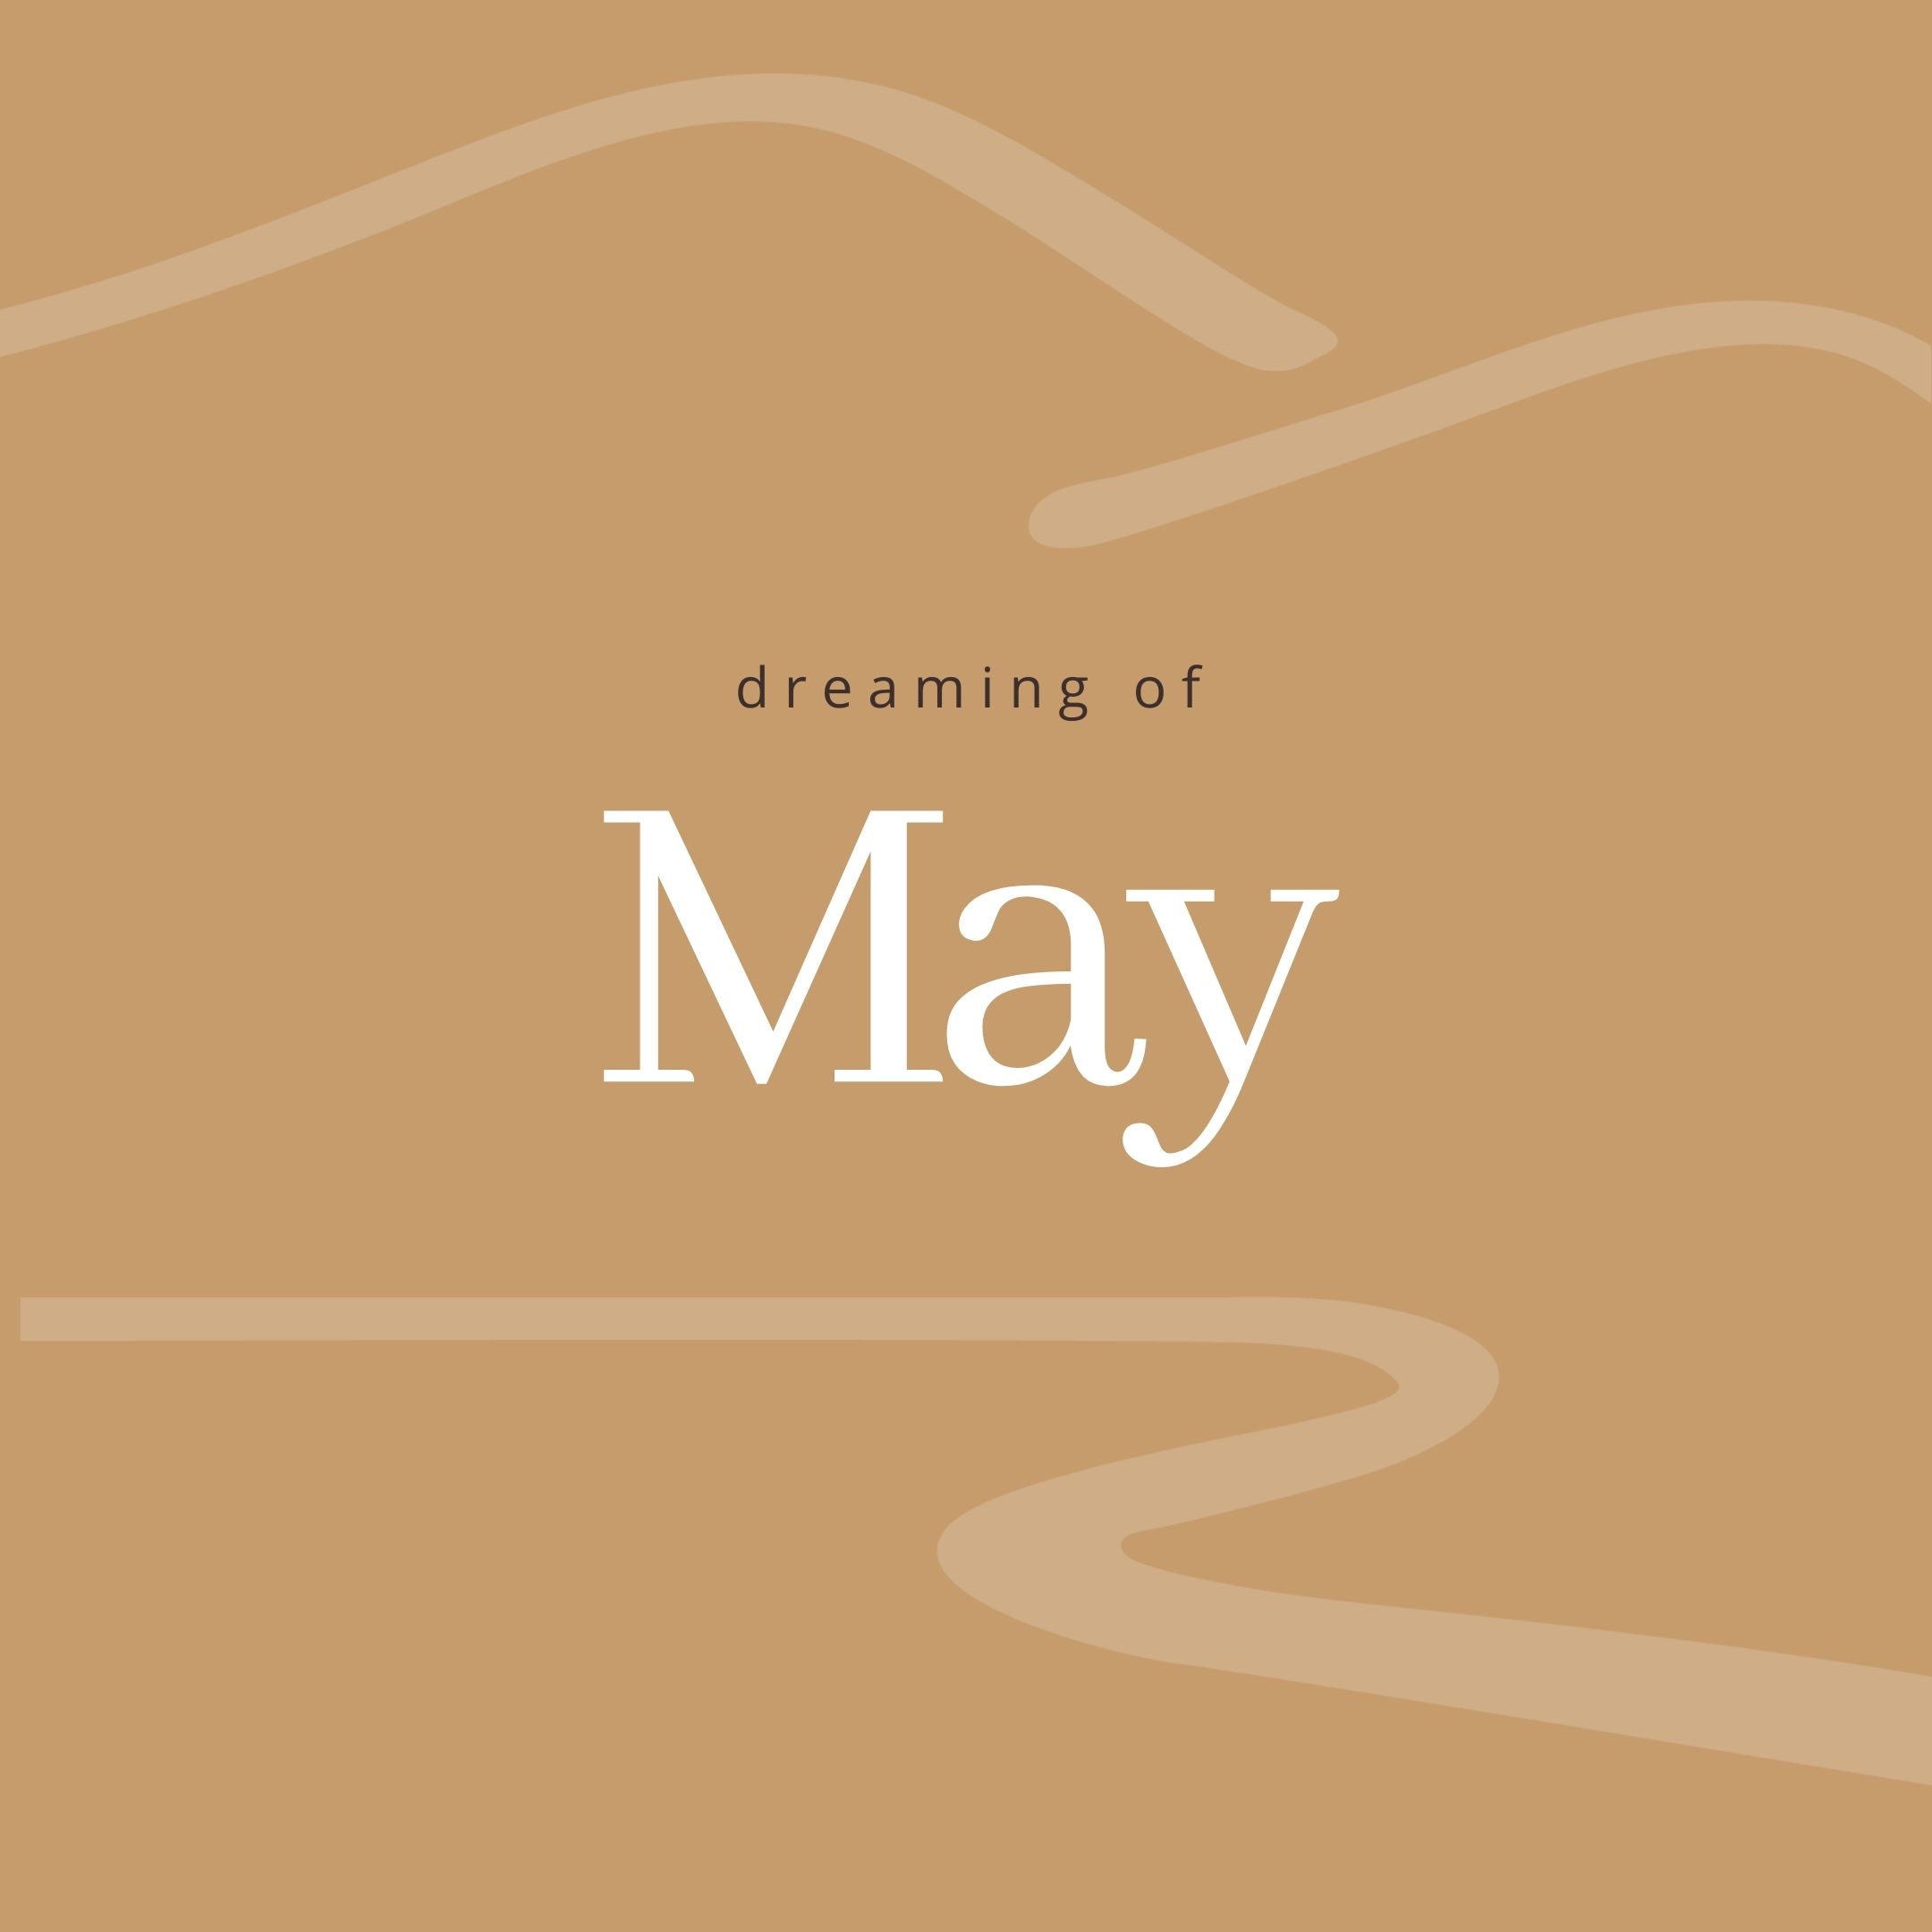 dreaming of may